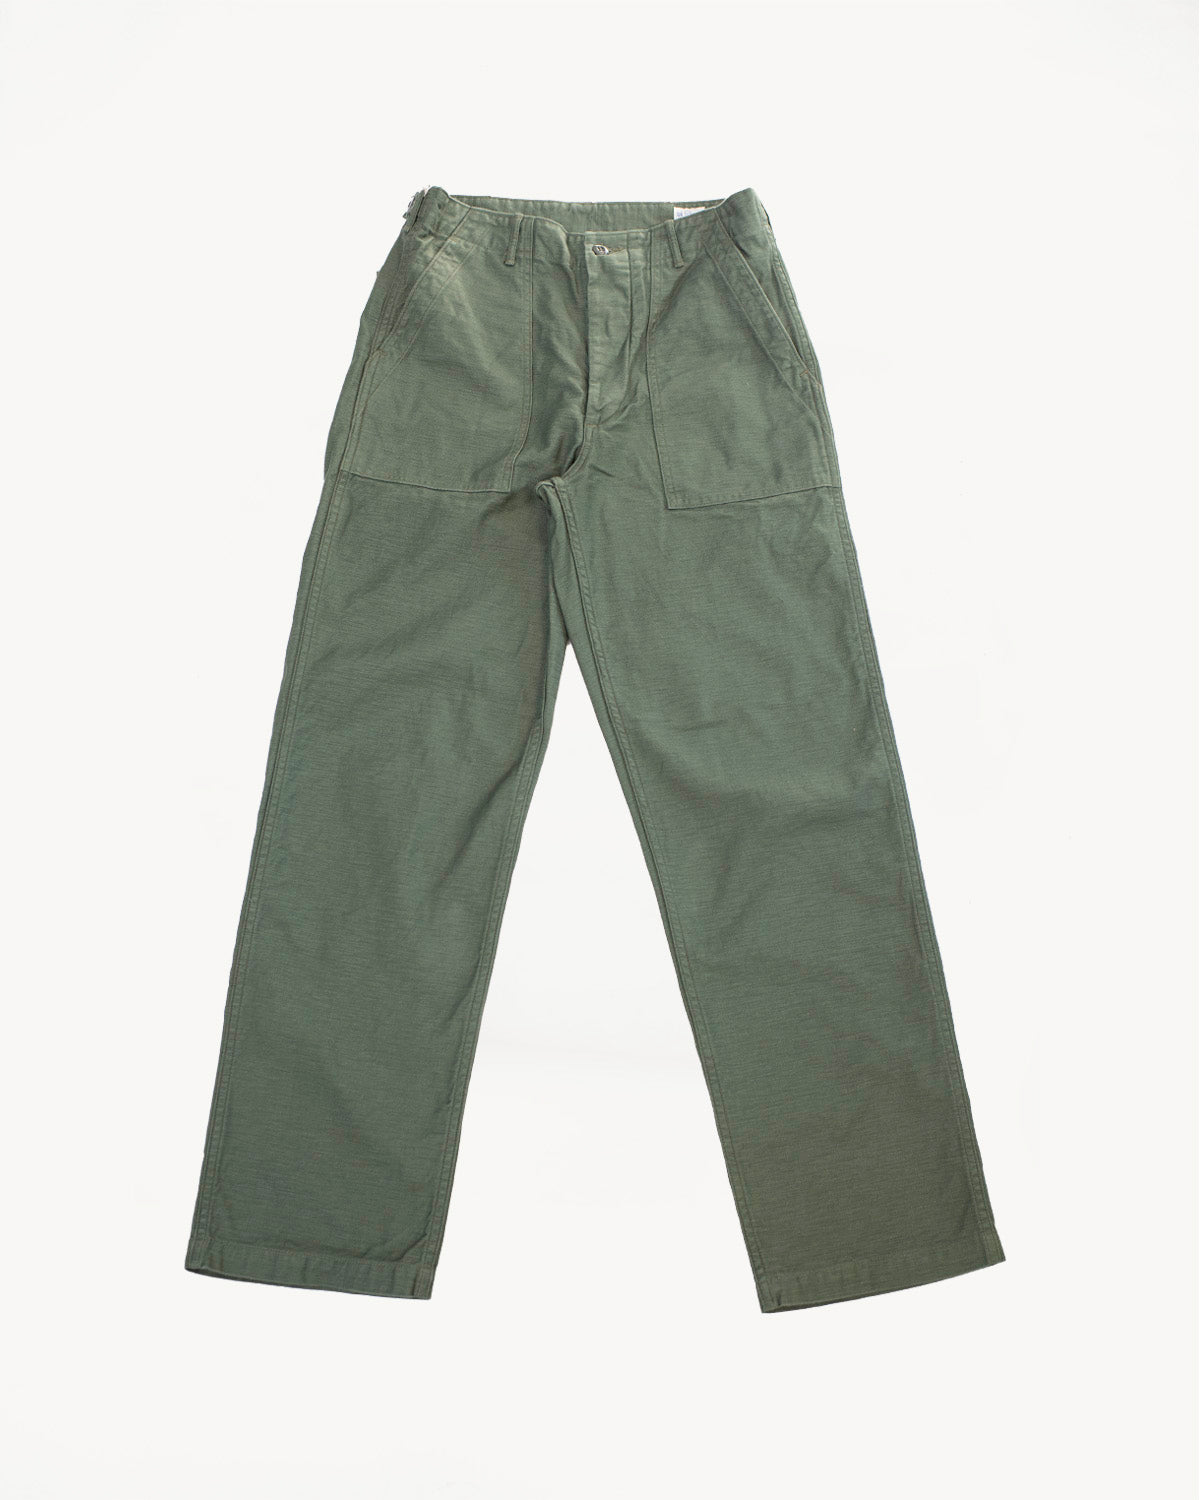 8045-W76 - Fatigue Shirt Melton Wool - Army Green